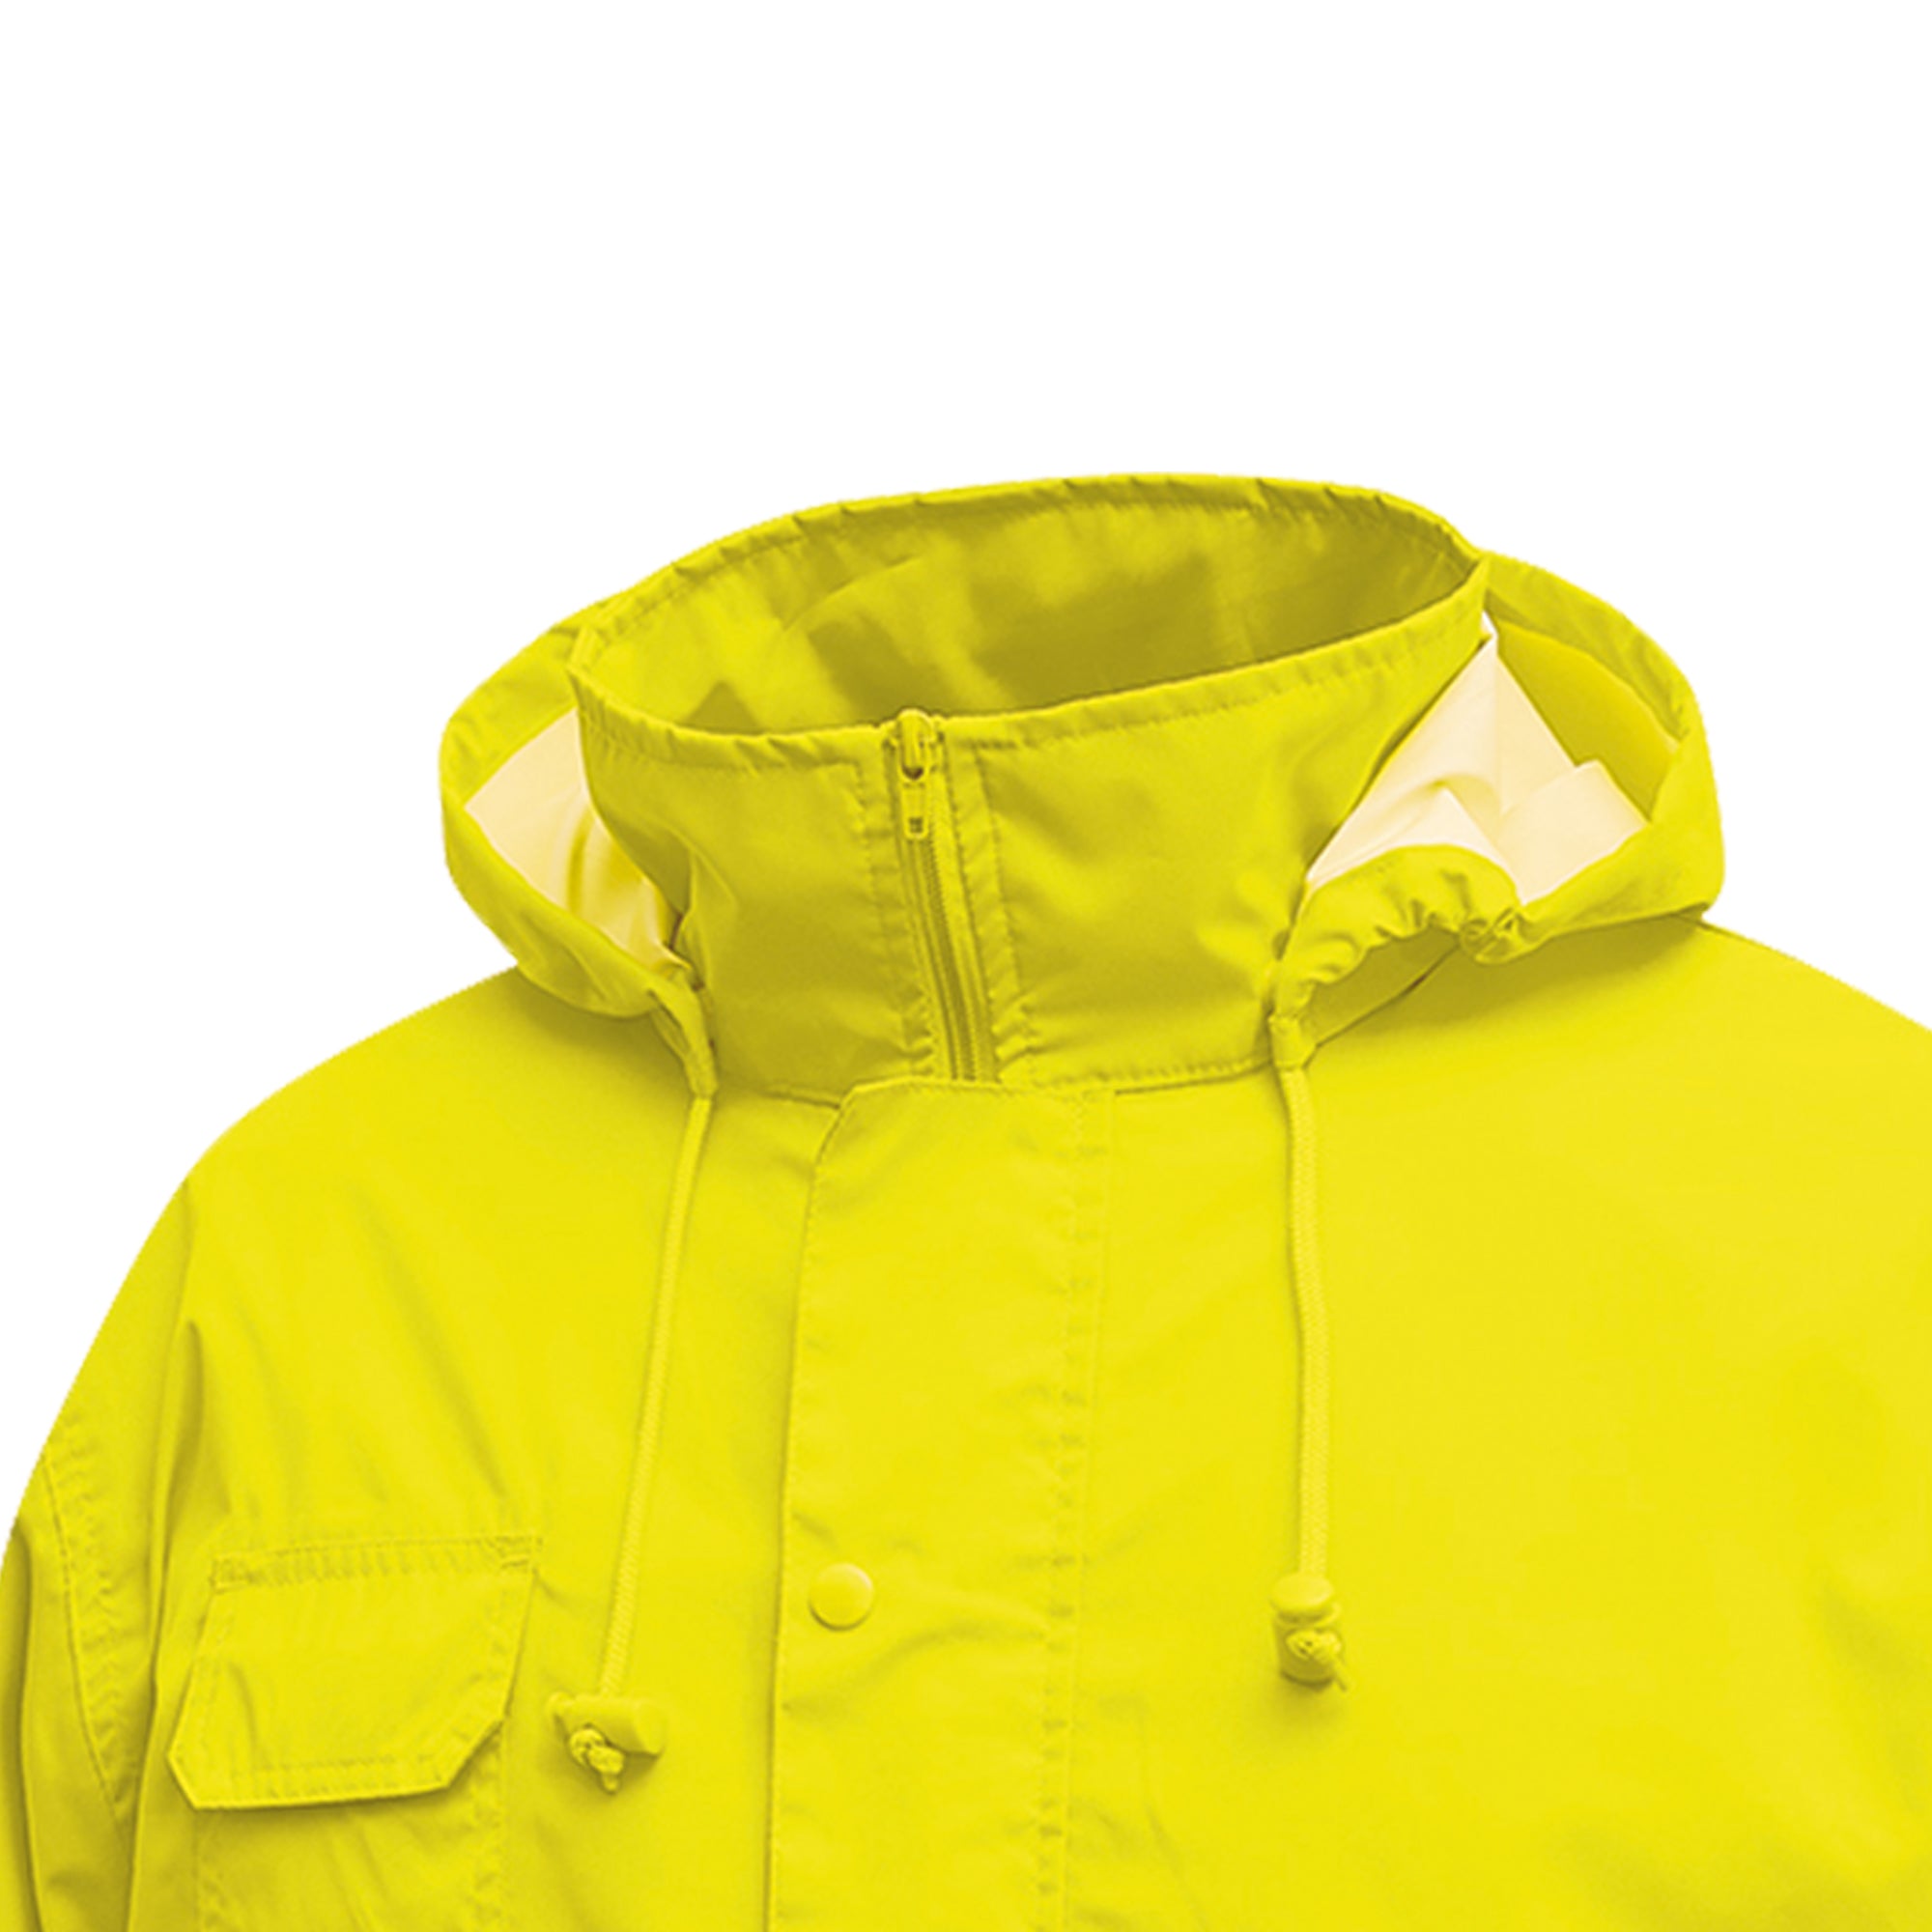 u-power-completo-antipioggia-alta-visibilita-cover-giallo-fluo-taglia-m